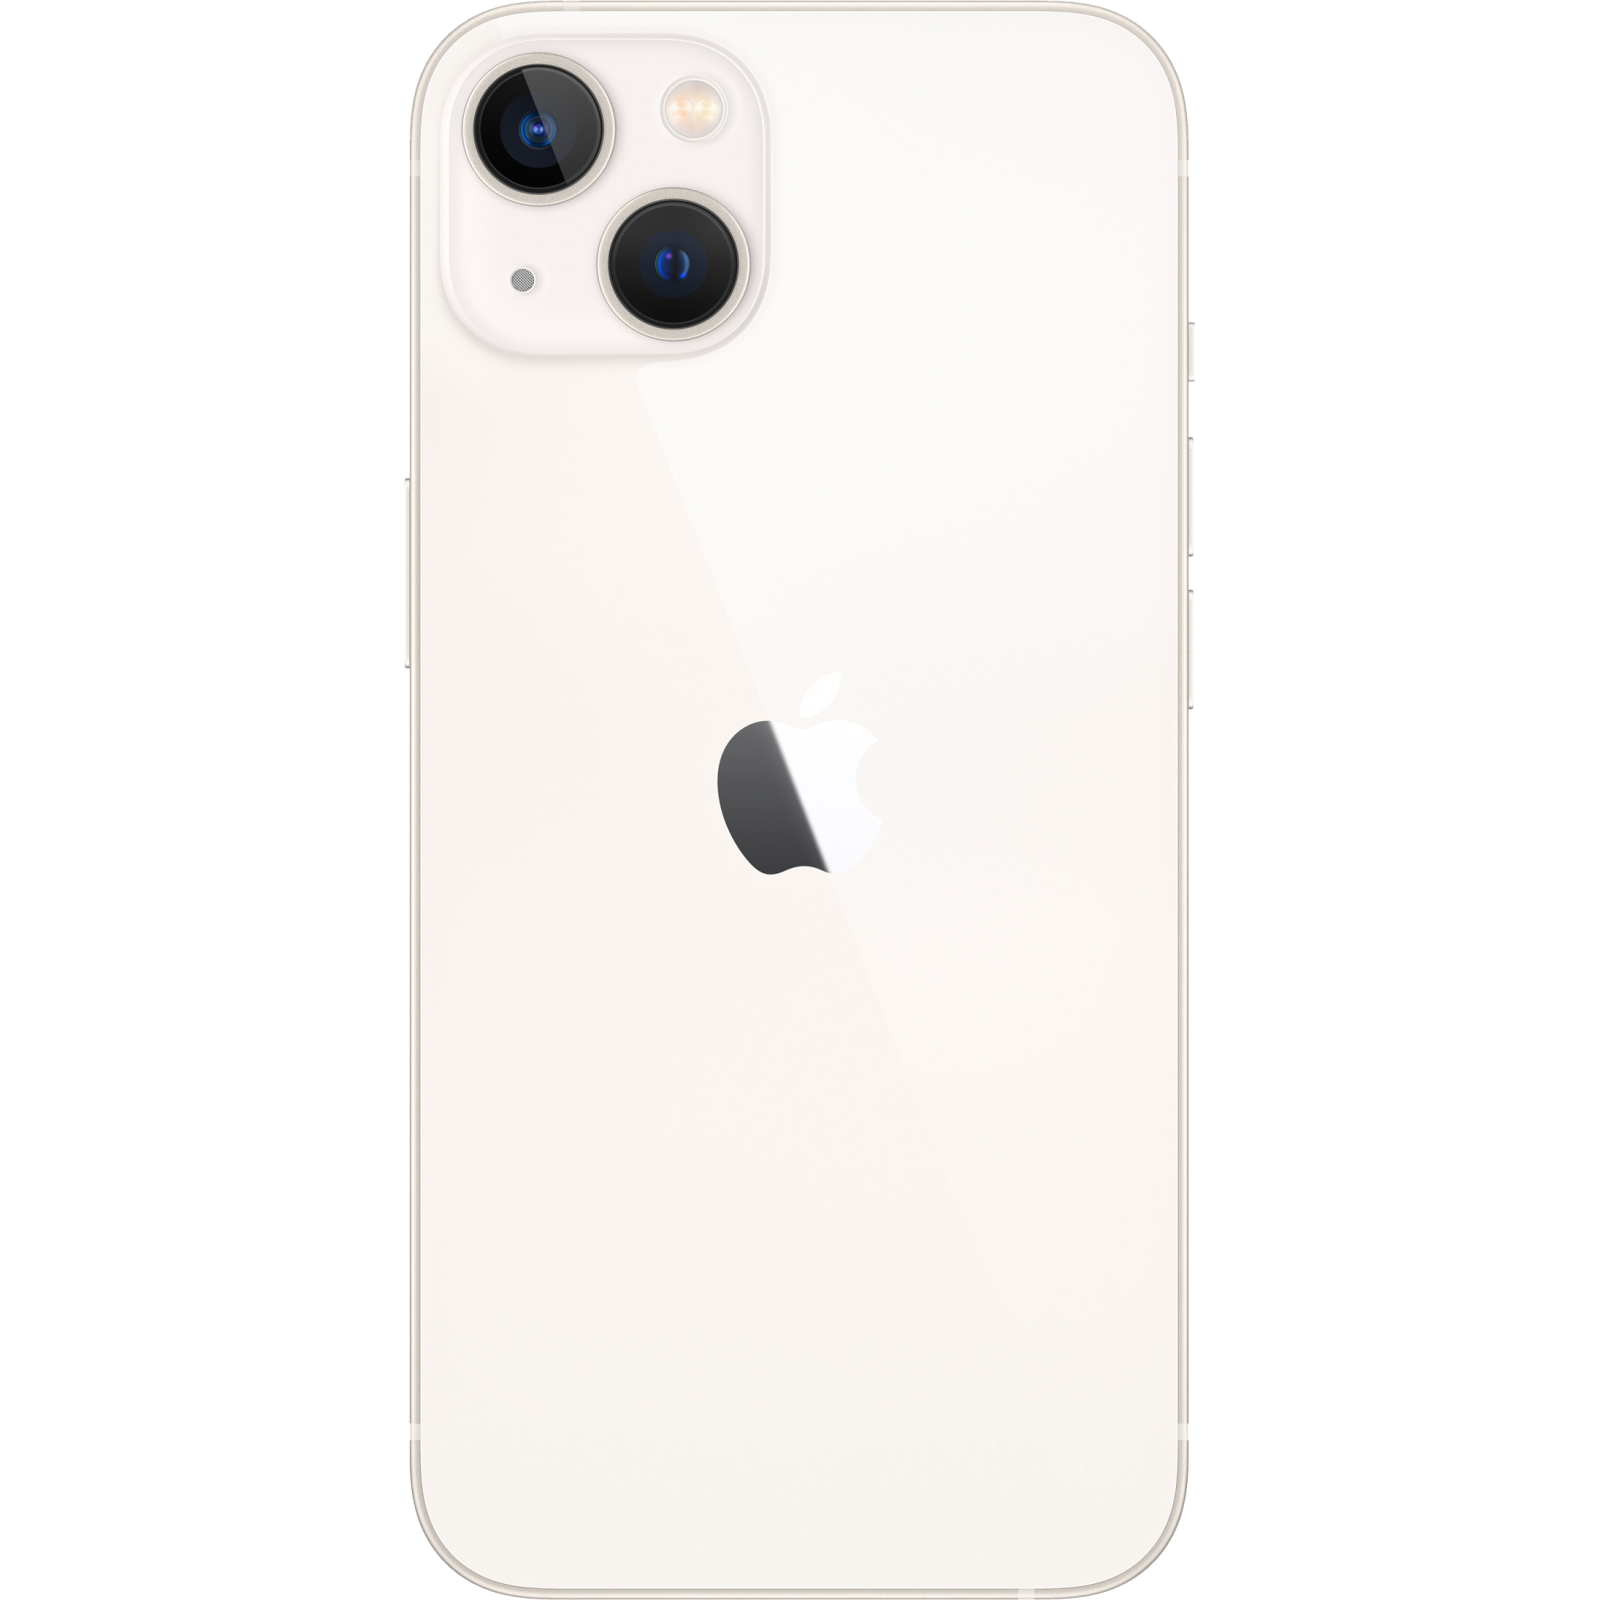 Мобільний телефон Apple iPhone 13 128GB Pink (MLPH3) зображення 2